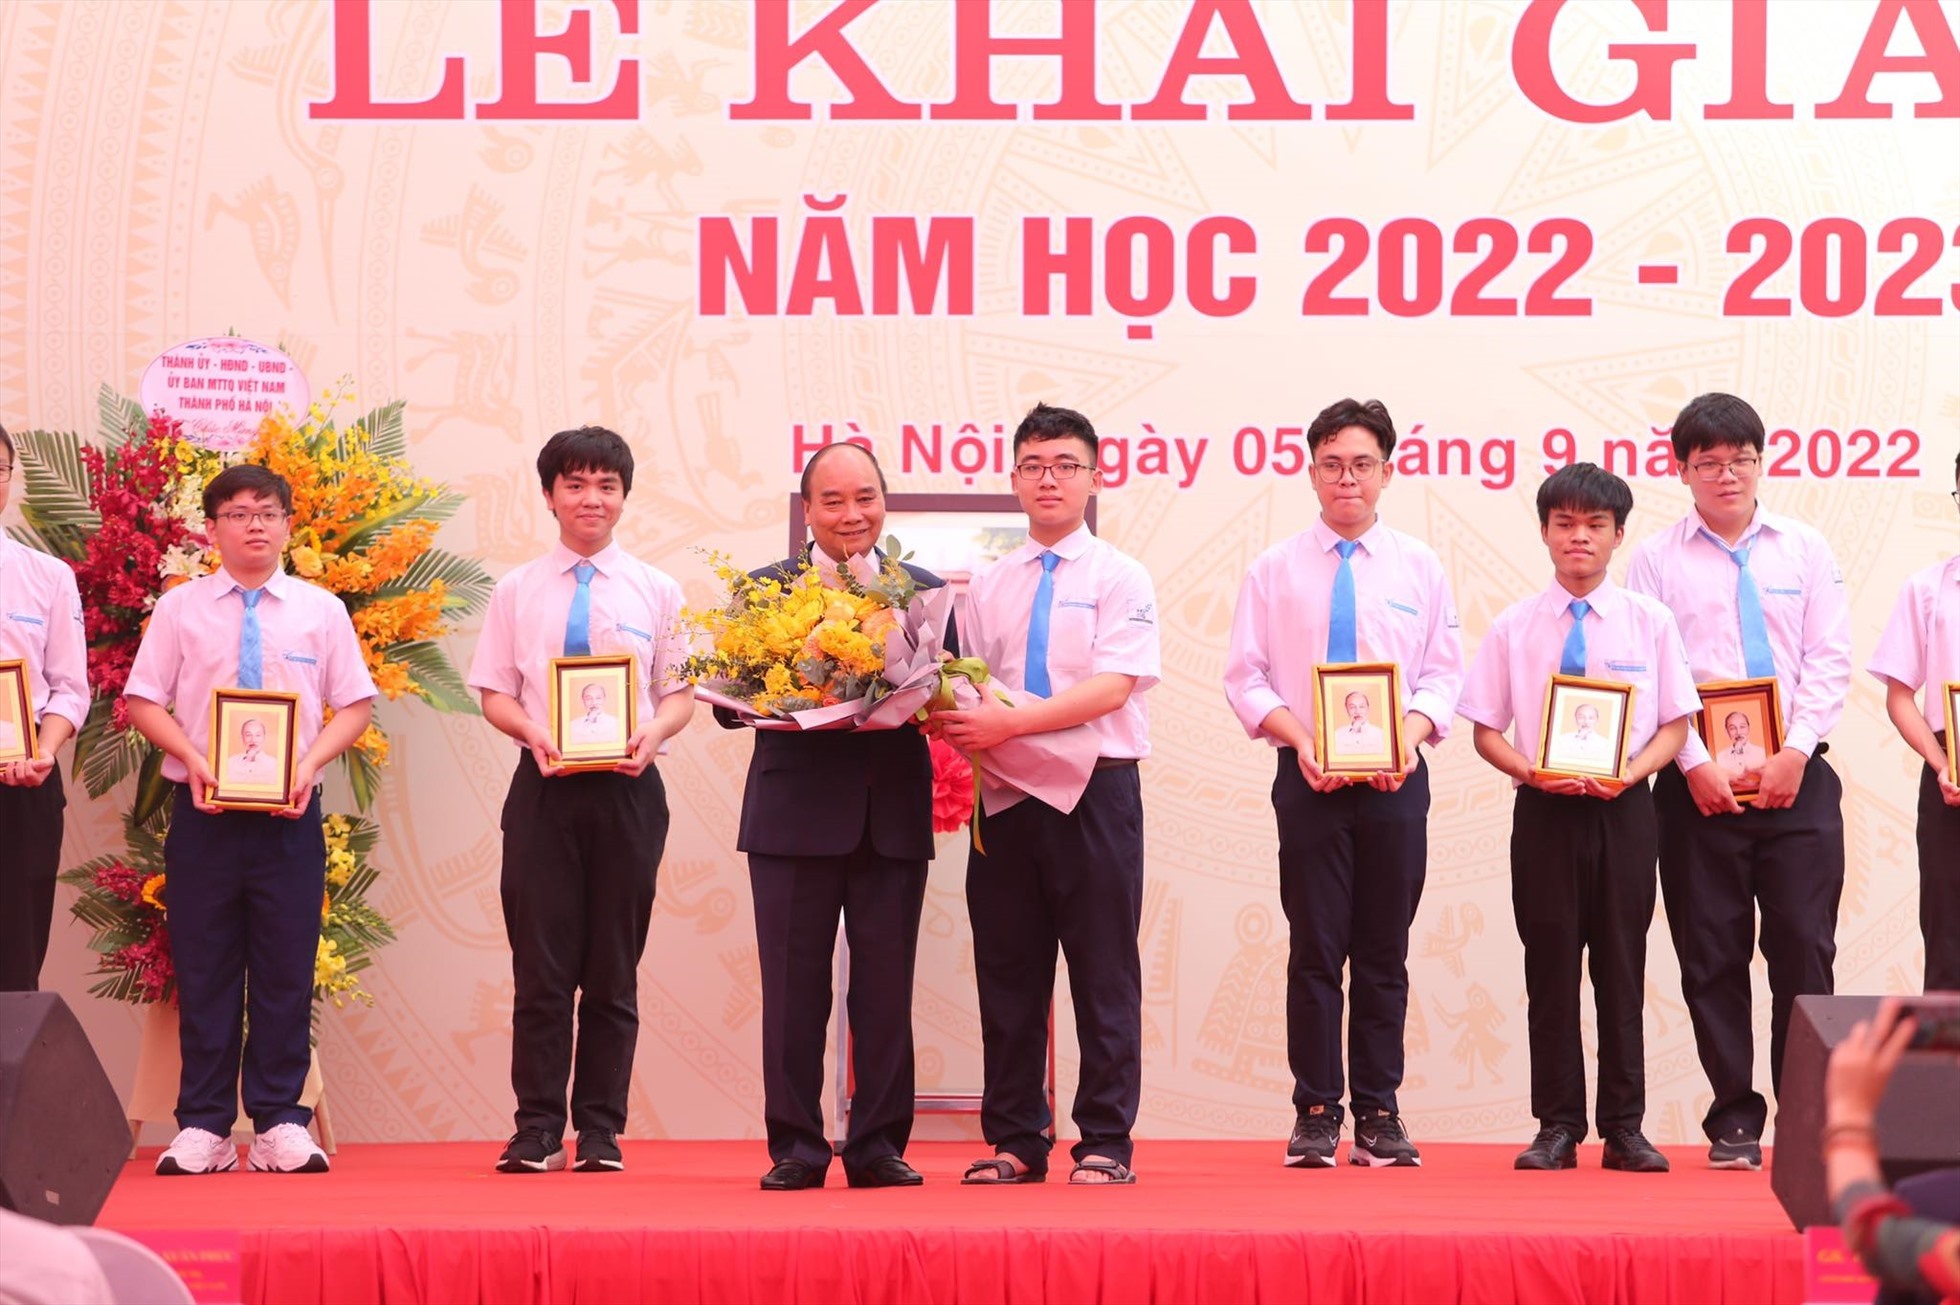 Chủ tịch nước Nguyễn Xuân Phúc tặng quà cho các em học sinh trường THPT Chuyên Khoa học Tự nhiên đạt thành tích xuất sắc trong các cuộc thi Olympic quốc tế.